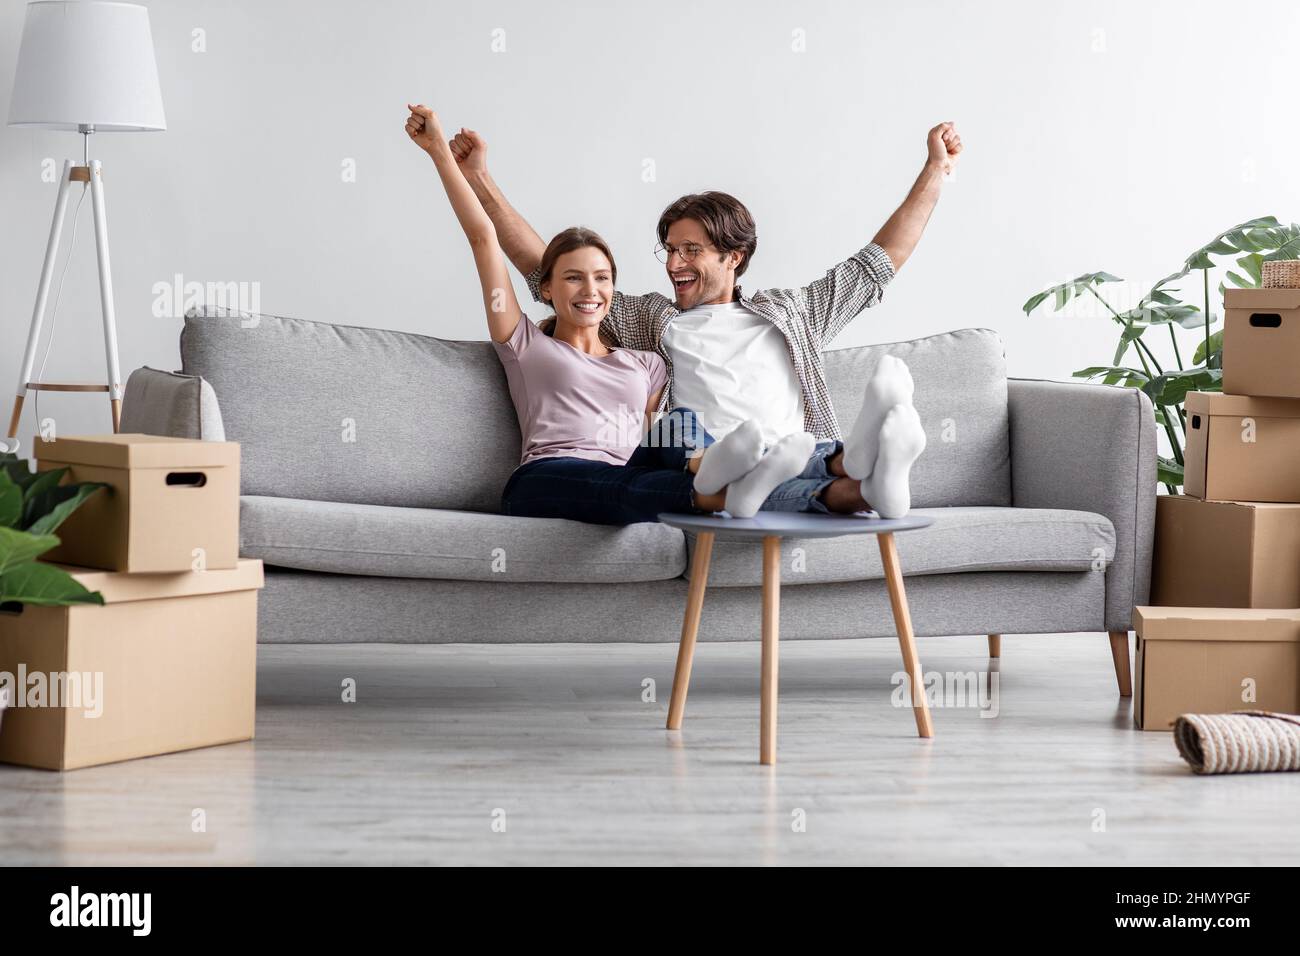 Zufriedene kaukasische Millennials-Paare sitzen auf dem Sofa, ruhen sich aus, heben ihre Hände hoch und feiern den Kauf einer neuen Wohnung Stockfoto